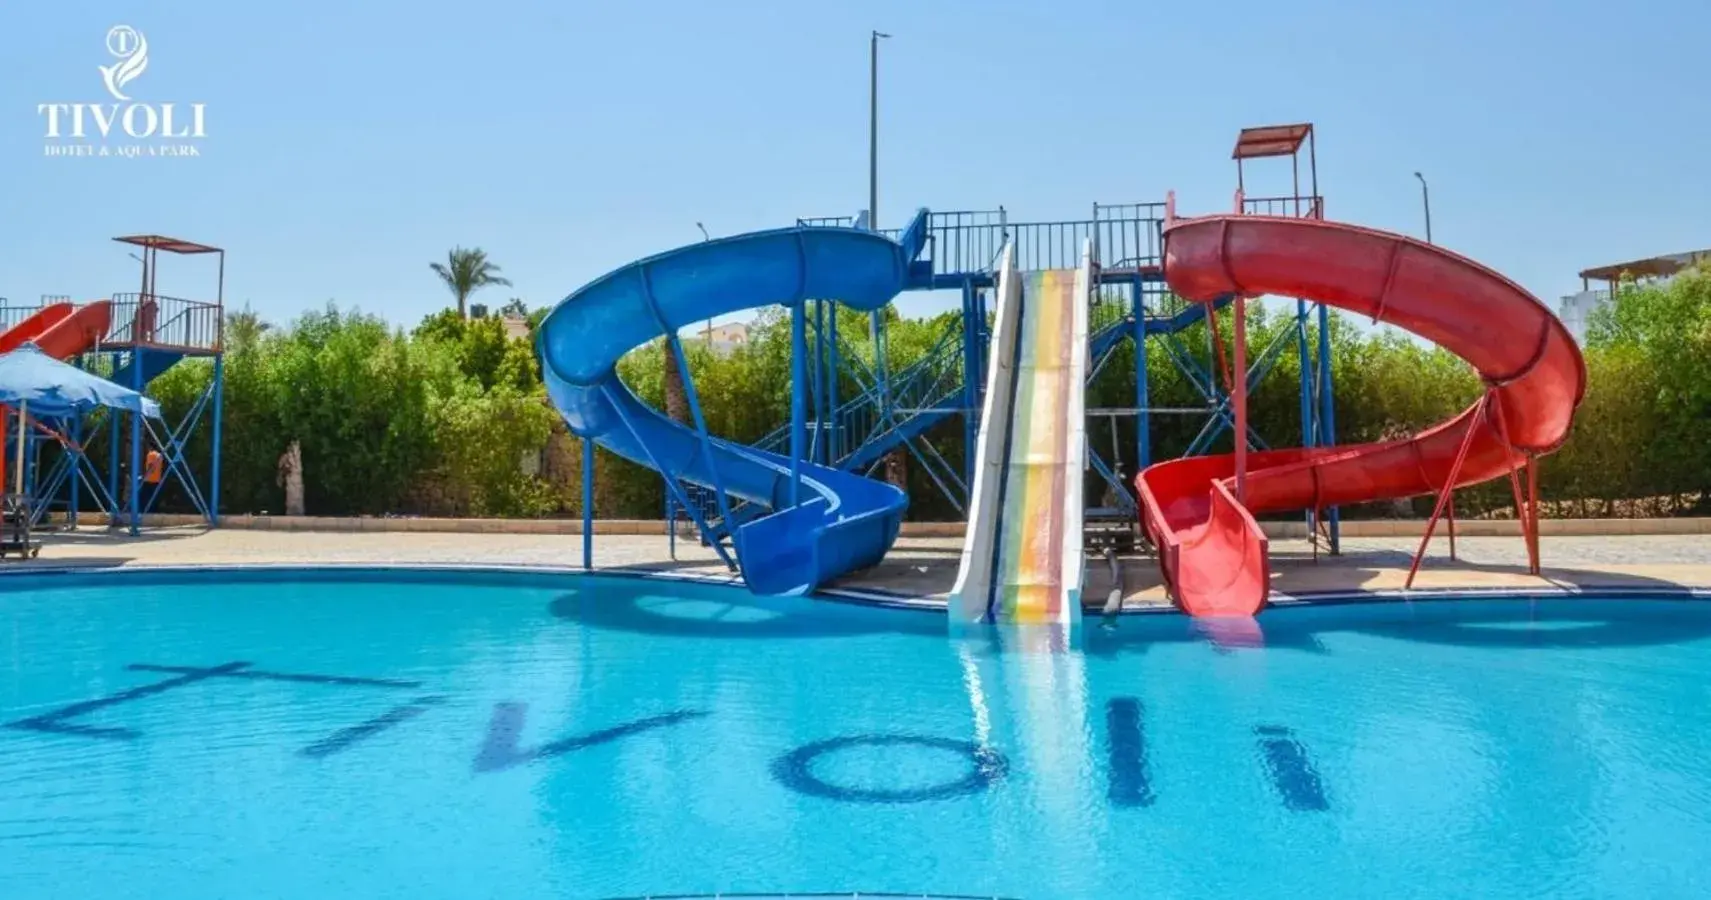 Aqua park, Water Park in Tivoli Hotel Aqua Park